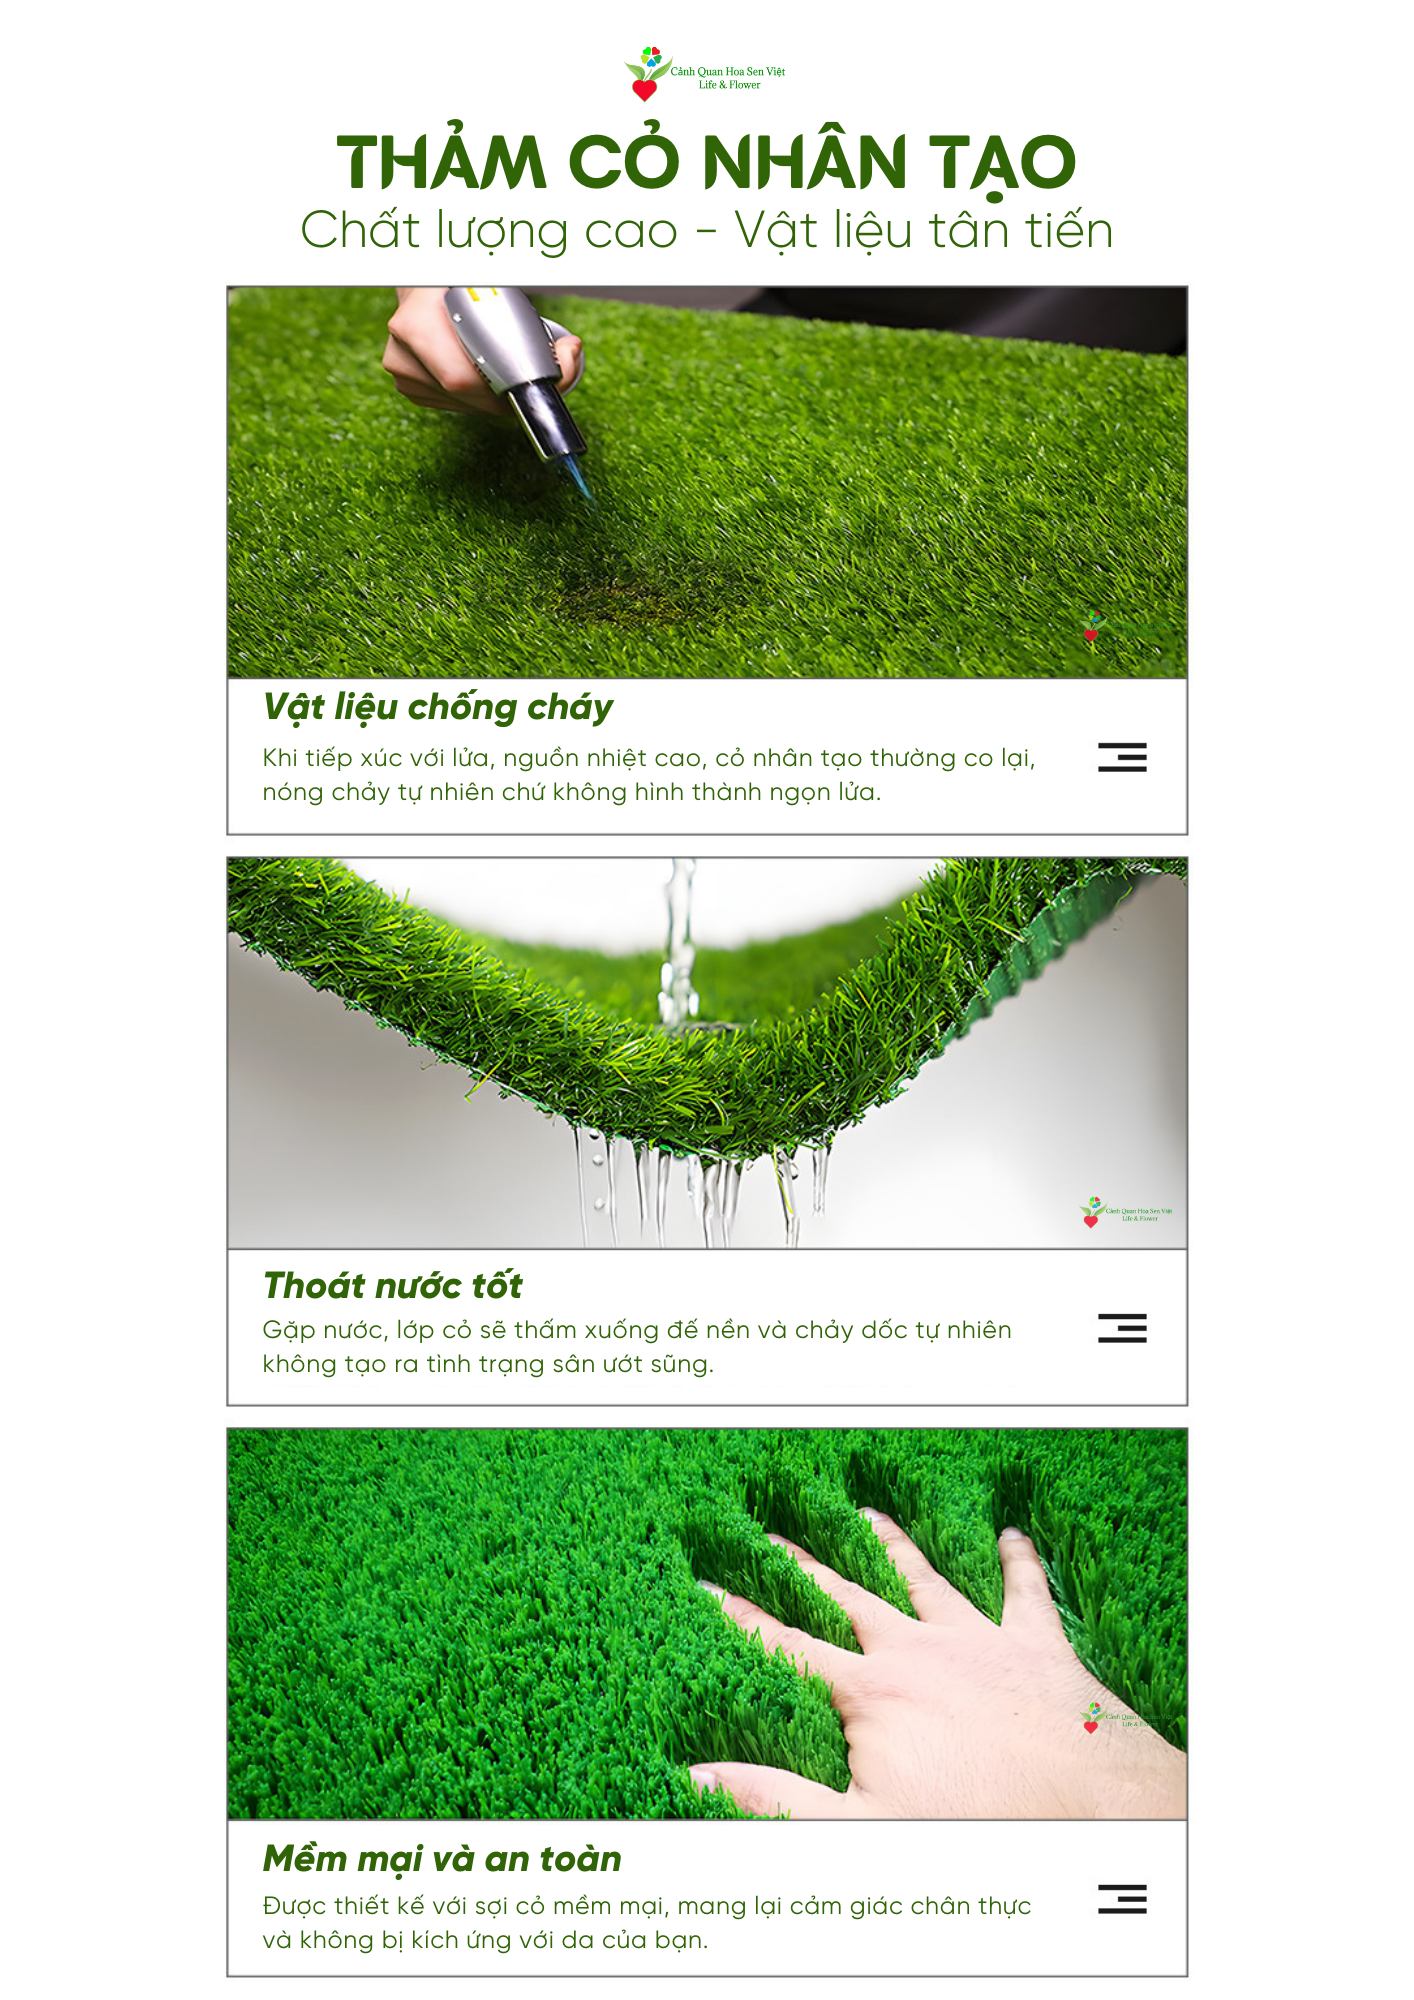 Lợi ích Thảm cỏ nhân tạo 3cm 3 lớp  - Cửa hàng thảm cỏ nhân tạo giá rẻ Đà Nẵng